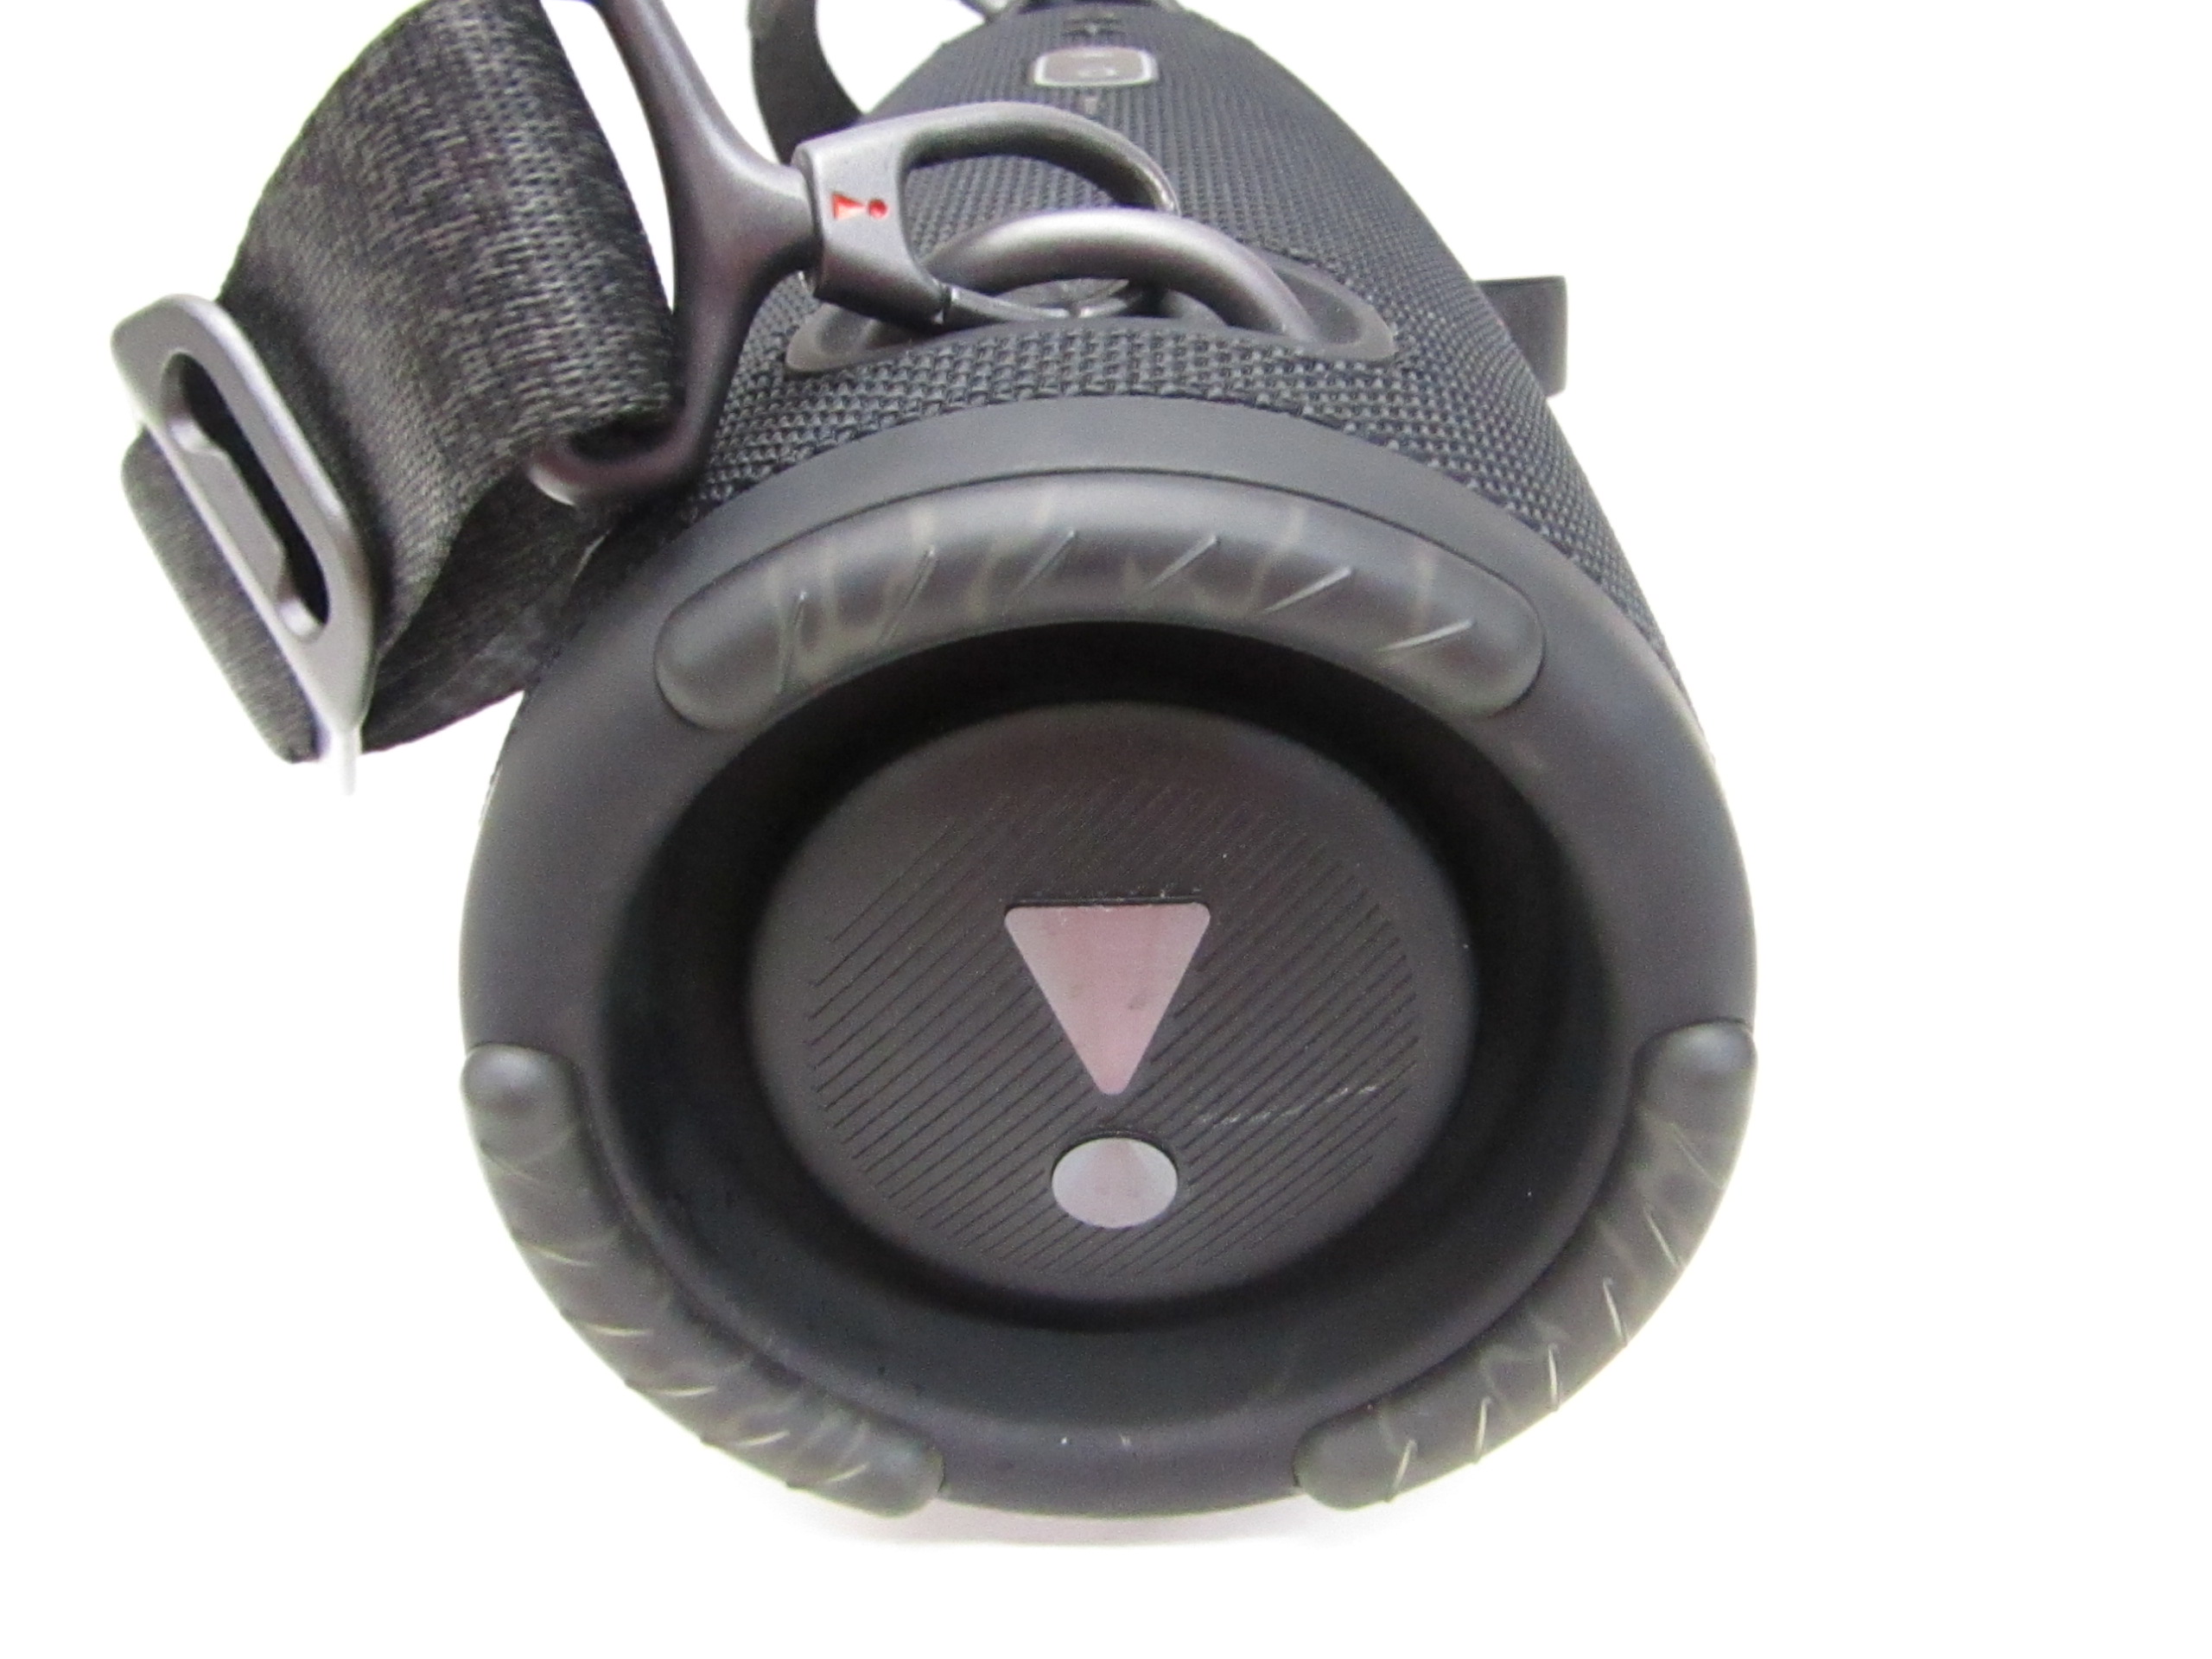 Jbl Xtreme 3 Portable Bluetooth Waterproof Speaker - Black : Target